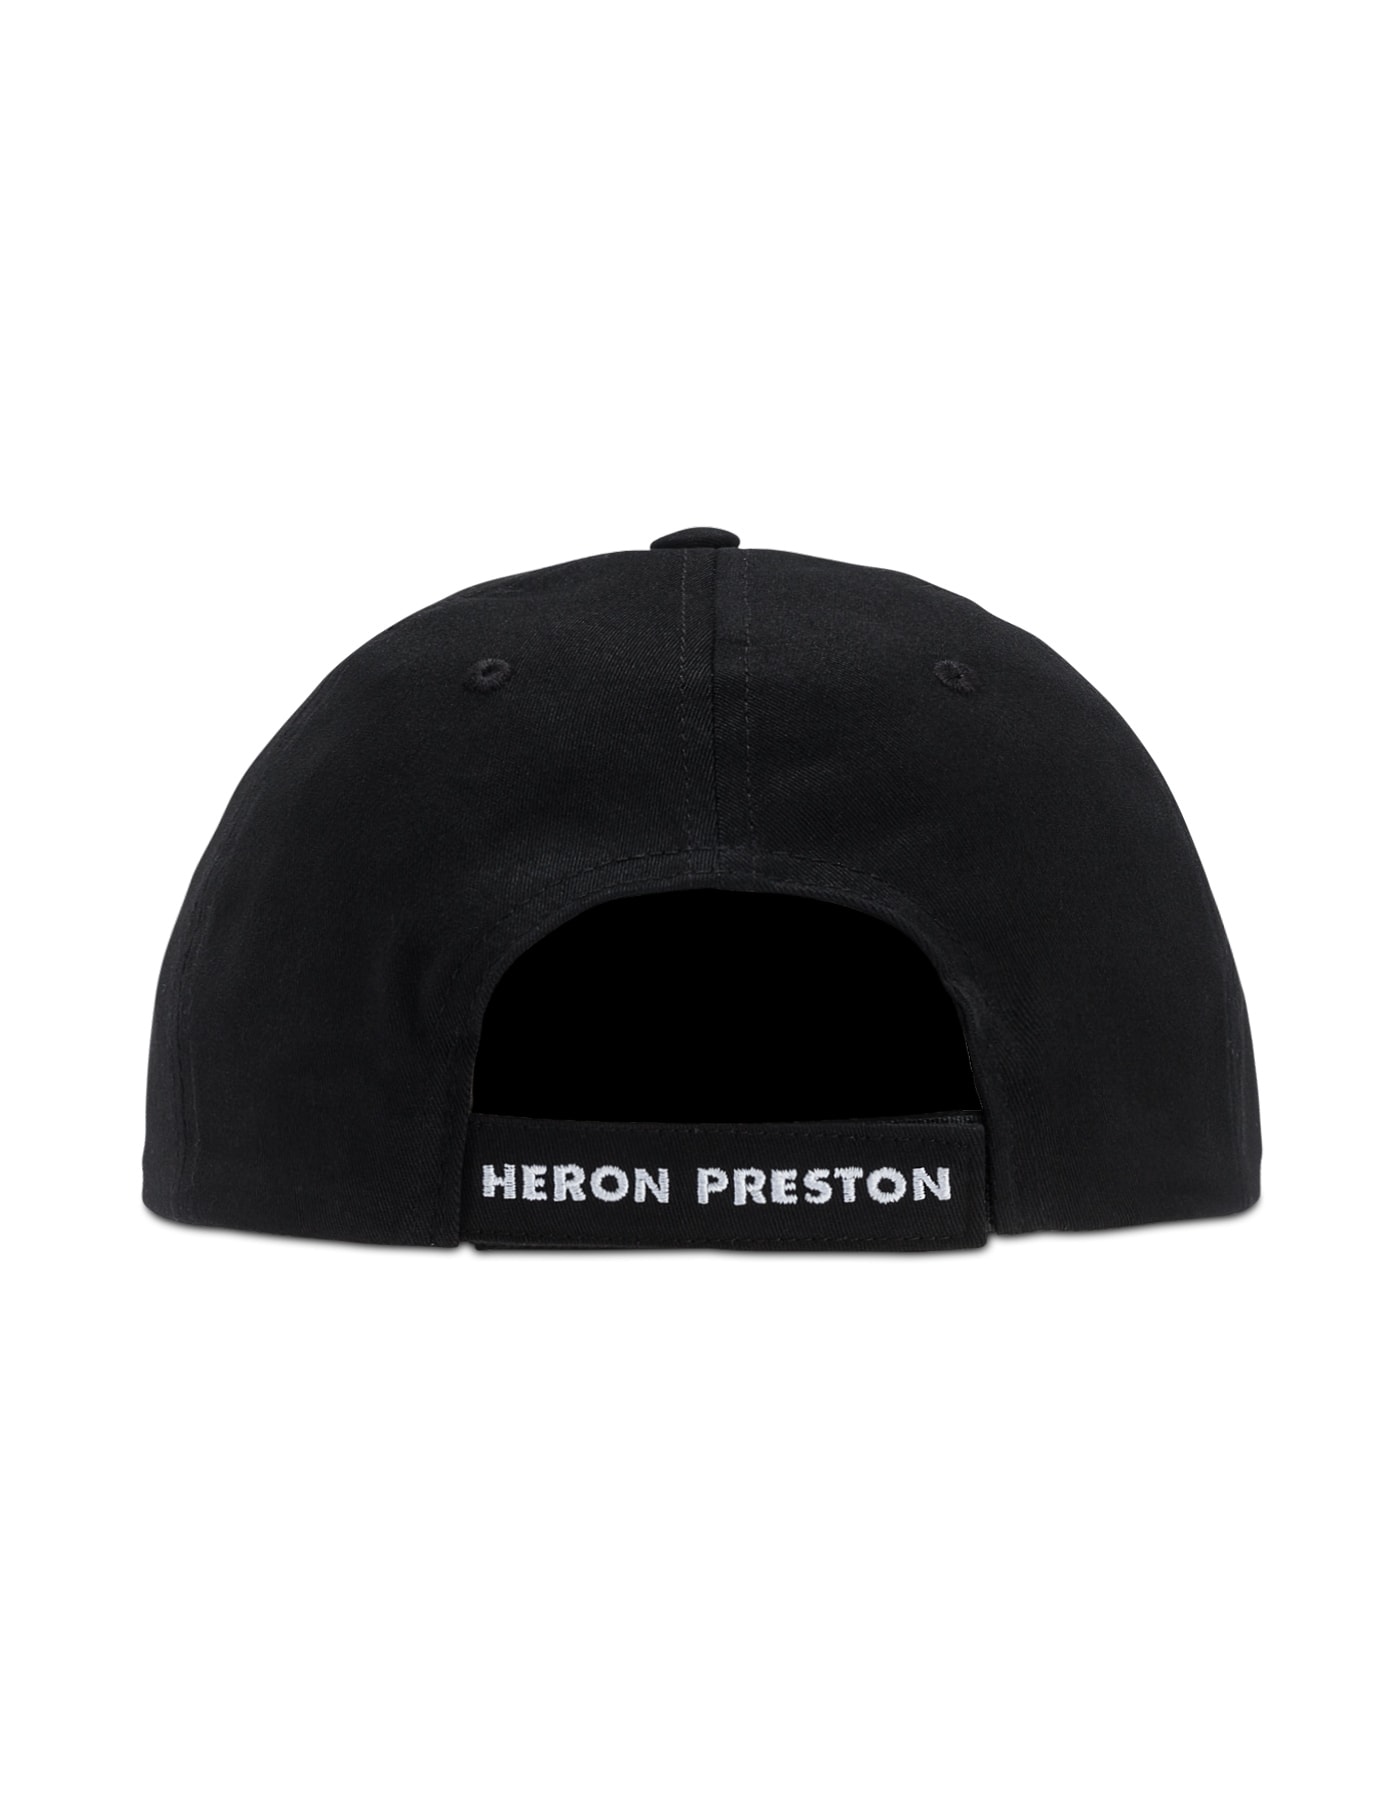 Heron Preston 將推出 HBX 限定服飾系列「Business Class」